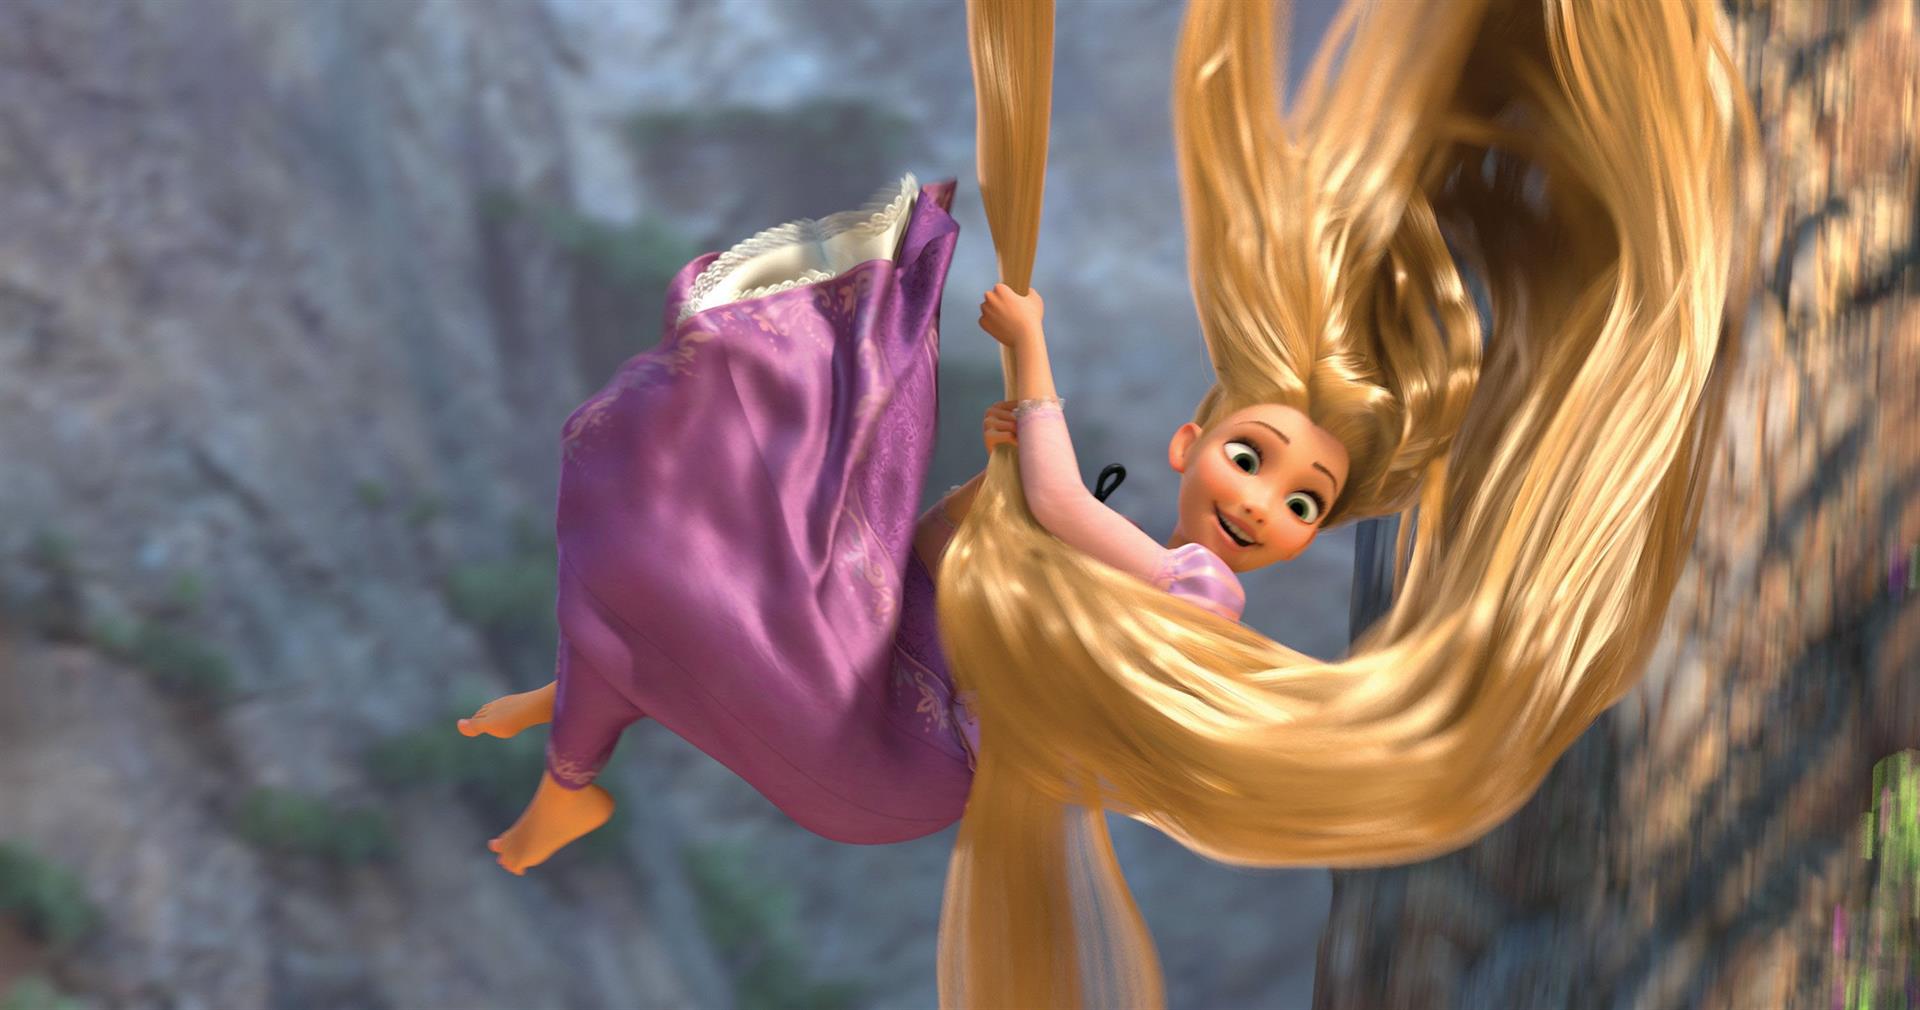 Enrédate con este encantador cosplay de Rapunzel en sus dos facetas